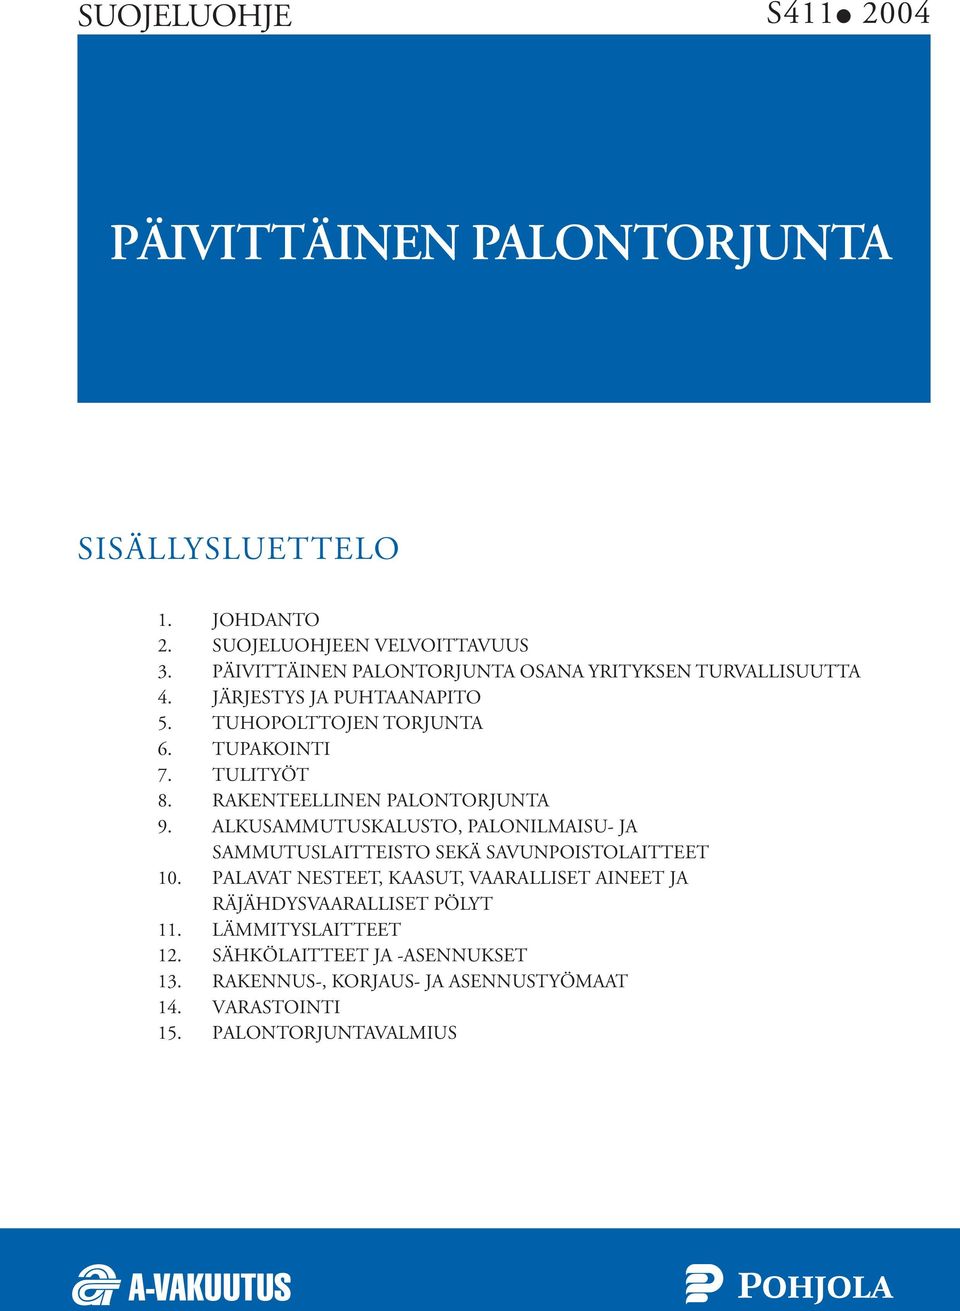 RAKENTEELLINEN PALONTORJUNTA 9. ALKUSAMMUTUSKALUSTO, PALONILMAISU- JA SAMMUTUSLAITTEISTO SEKÄ SAVUNPOISTOLAITTEET 10.